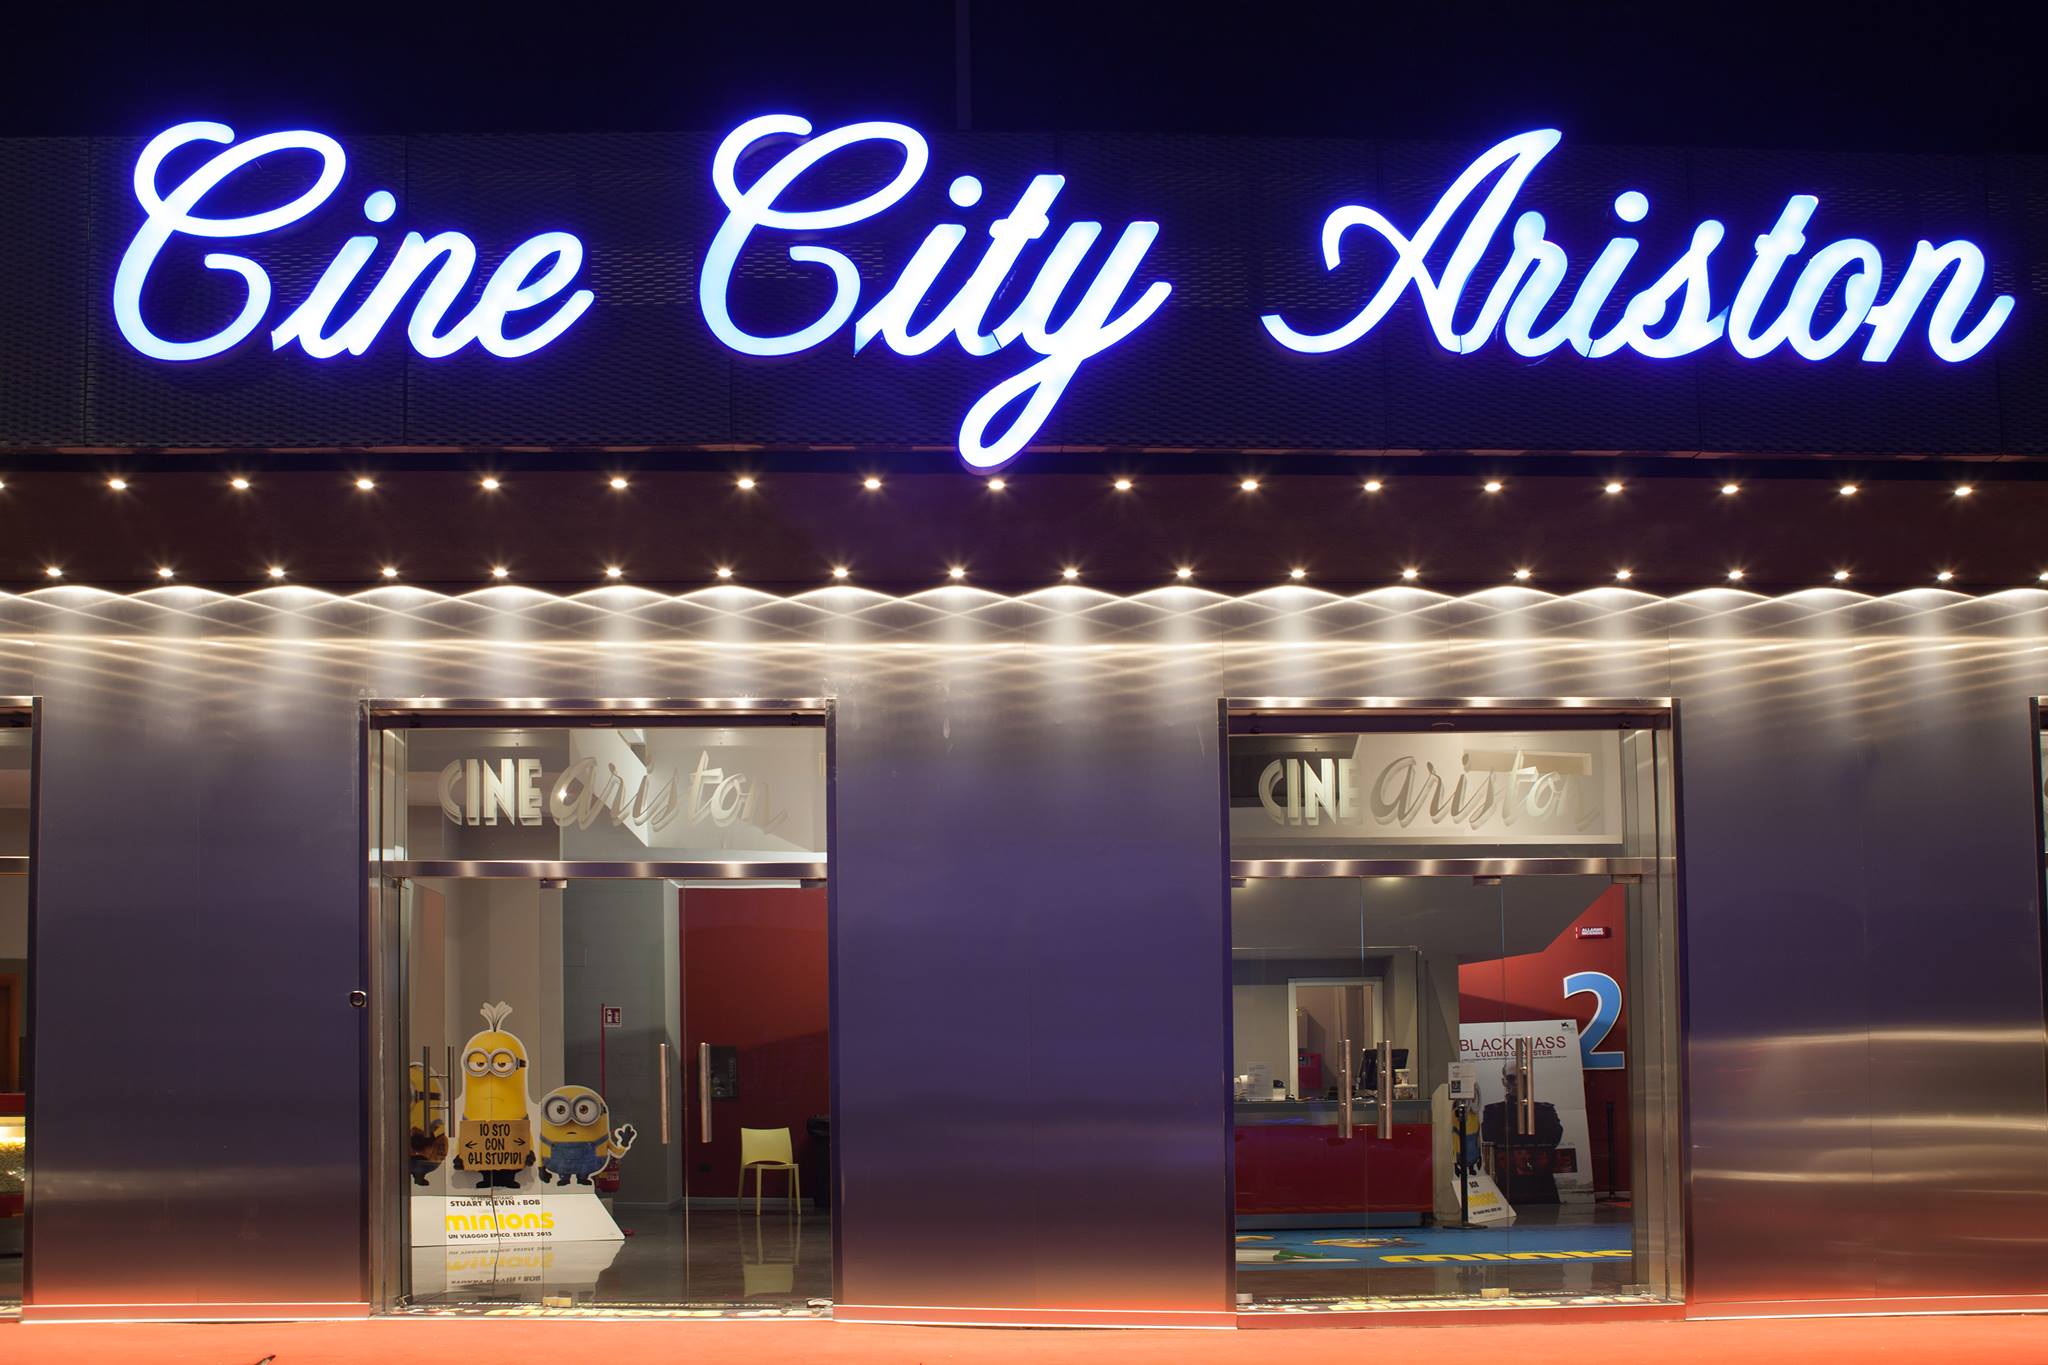 Cine City Ariston programmazione Dicembre 2018